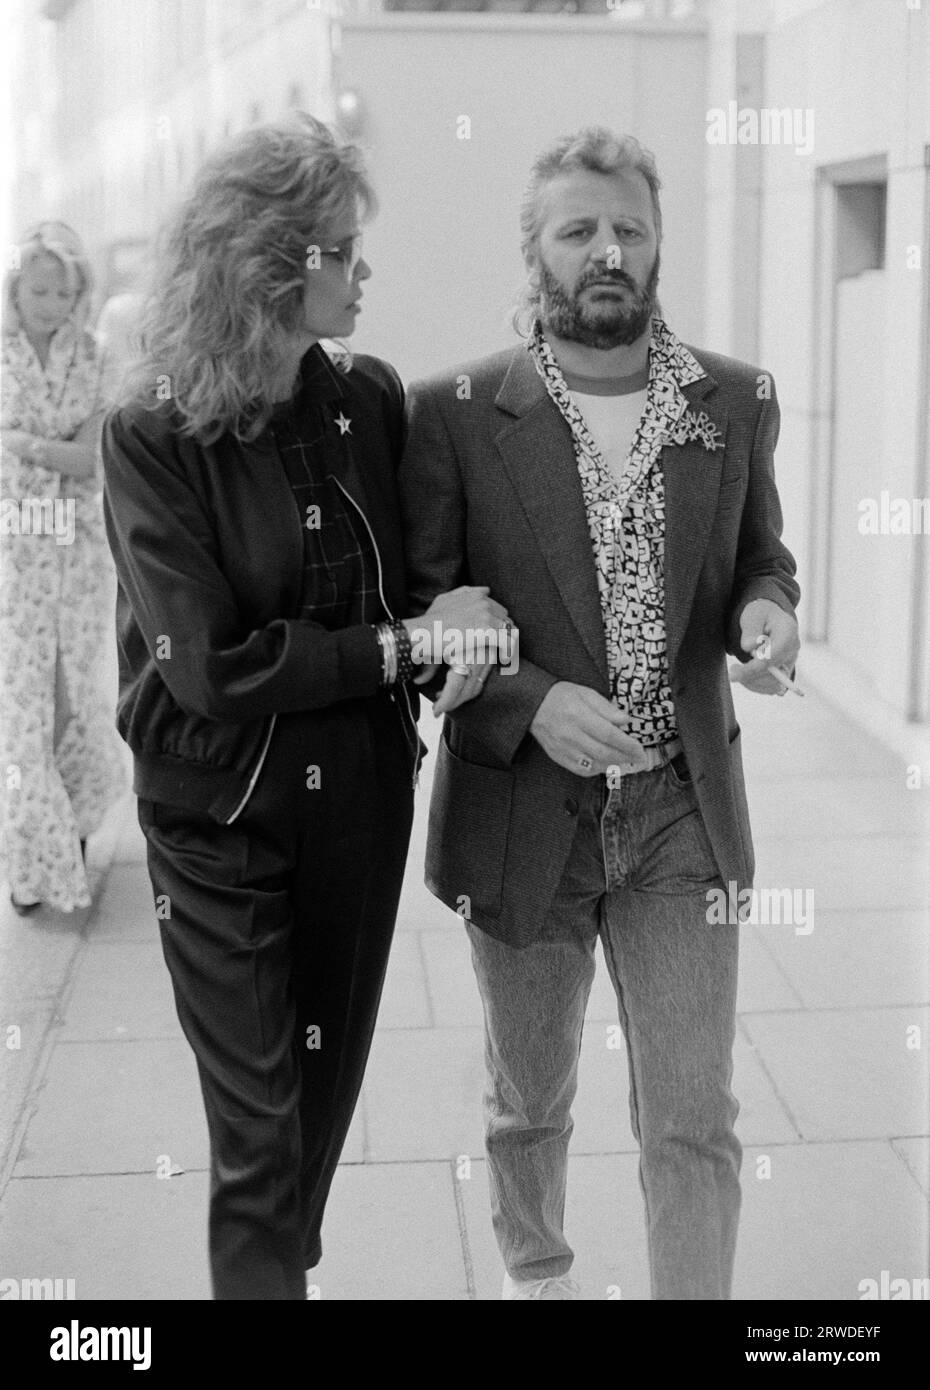 LONDON, GROSSBRITANNIEN. 1986. September: Die ehemalige Beatle Ringo Starr und ihre Frau Barbara Bach nehmen an einer Charity-Fashion-Veranstaltung in London Teil. Datei Foto © Paul Smith/Featureflash Stockfoto